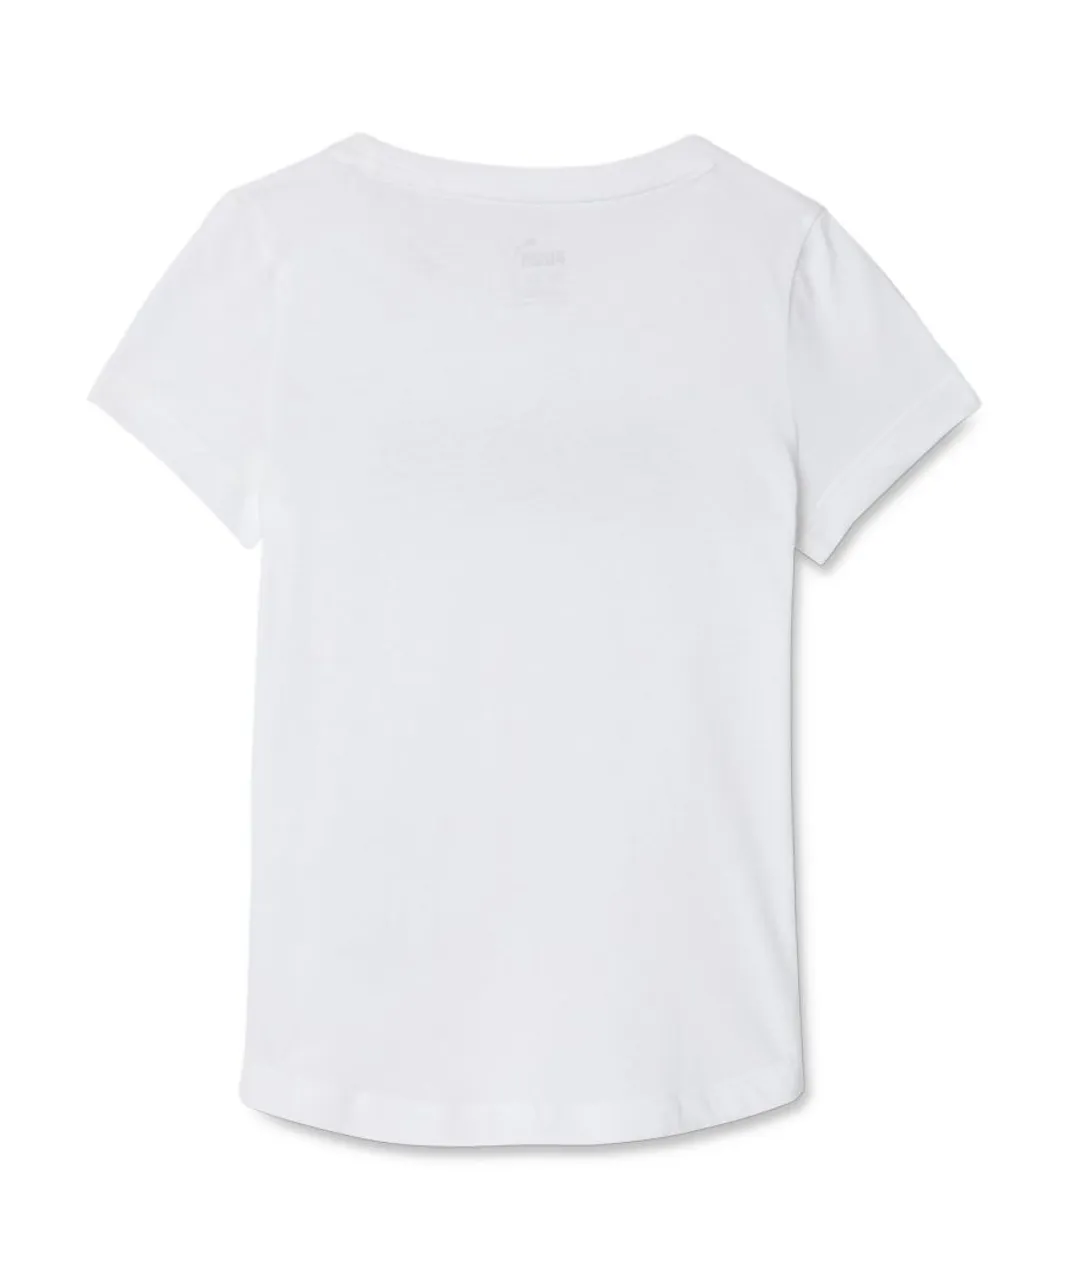 Puma Childrens Unisex Kids Boys Girls Essentials Youth Tee T-Shirt - White Cotton